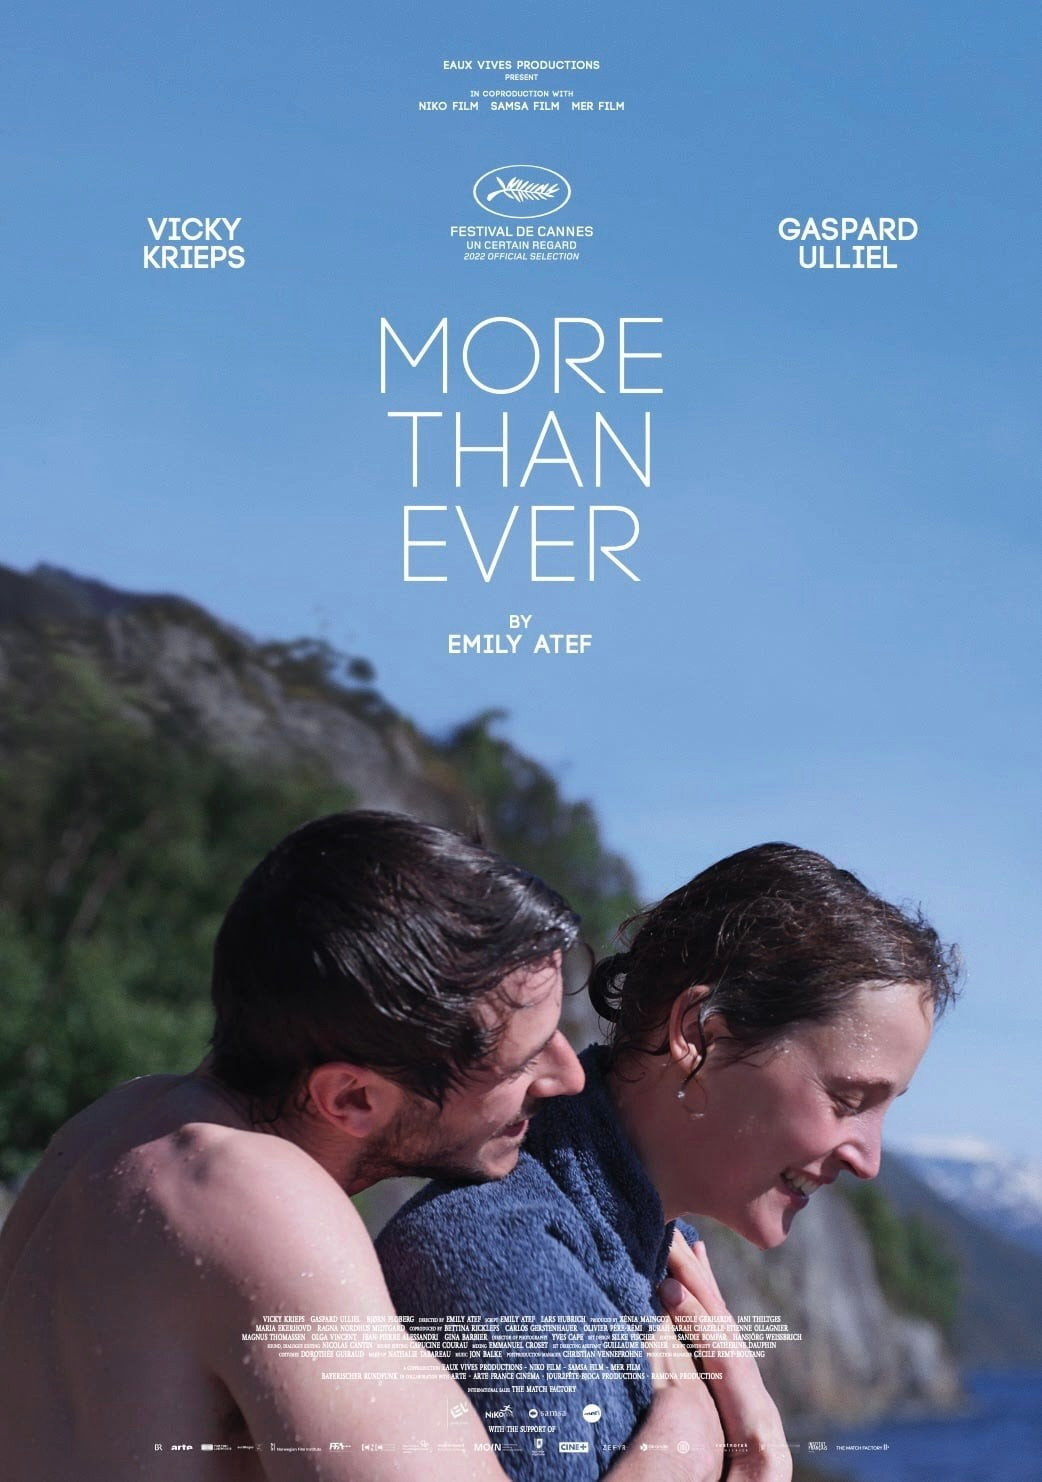 L’affiche du film «Plus que jamais», où Vicky Krieps partage l’affiche avec Gaspard Ulliel. (Photo: Samsa Film)